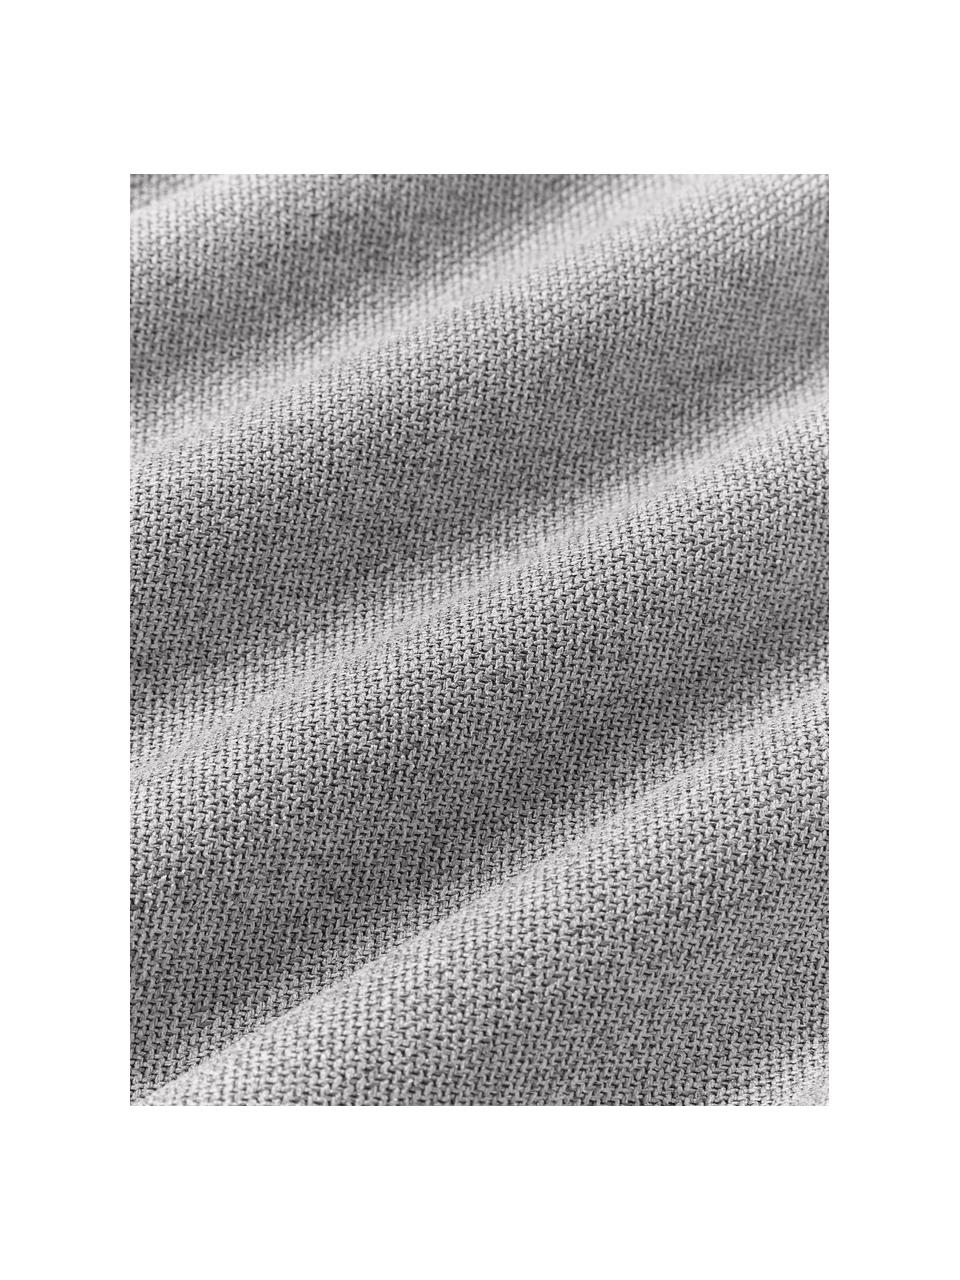 Poduszka Lennon, Szara tkanina, S 80 x D 50 cm